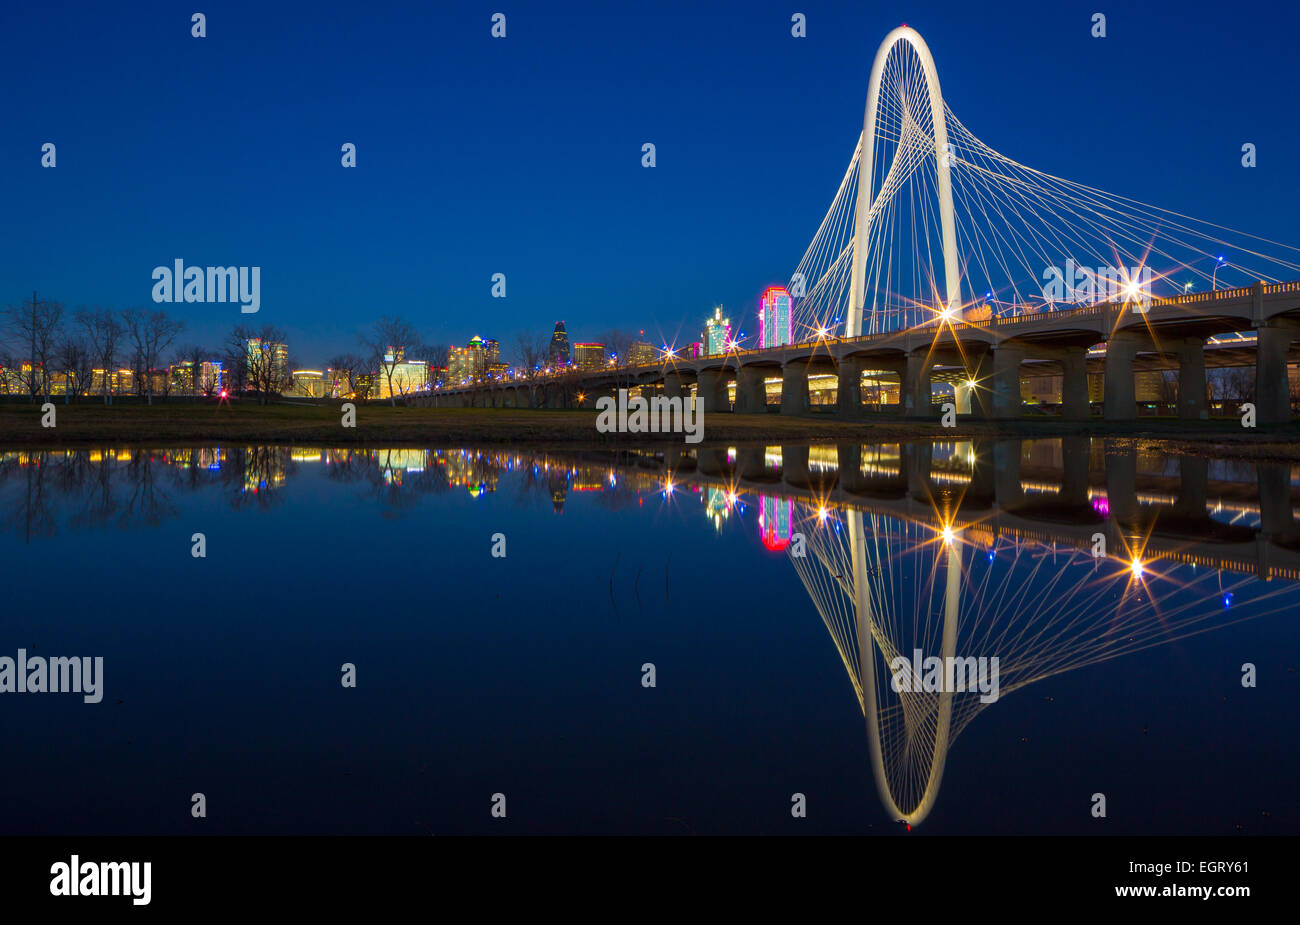 Dallas est la neuvième ville la plus peuplée des États-Unis d'Amérique et la troisième ville la plus peuplée de l'état du Texas. Banque D'Images